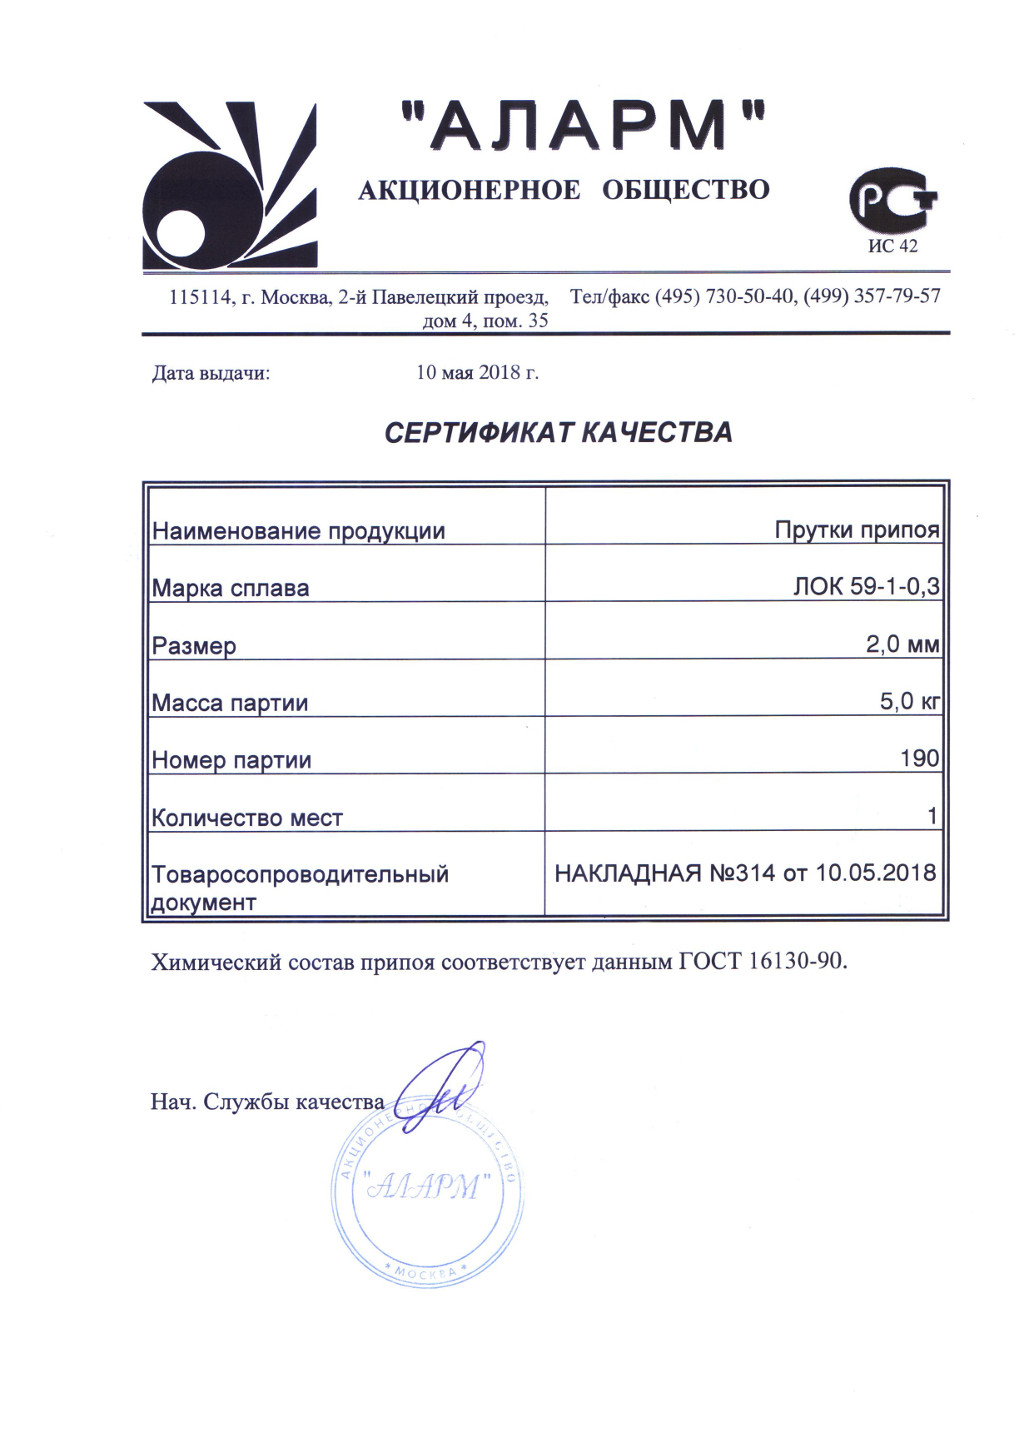 Сертификат припой ЛОК 59